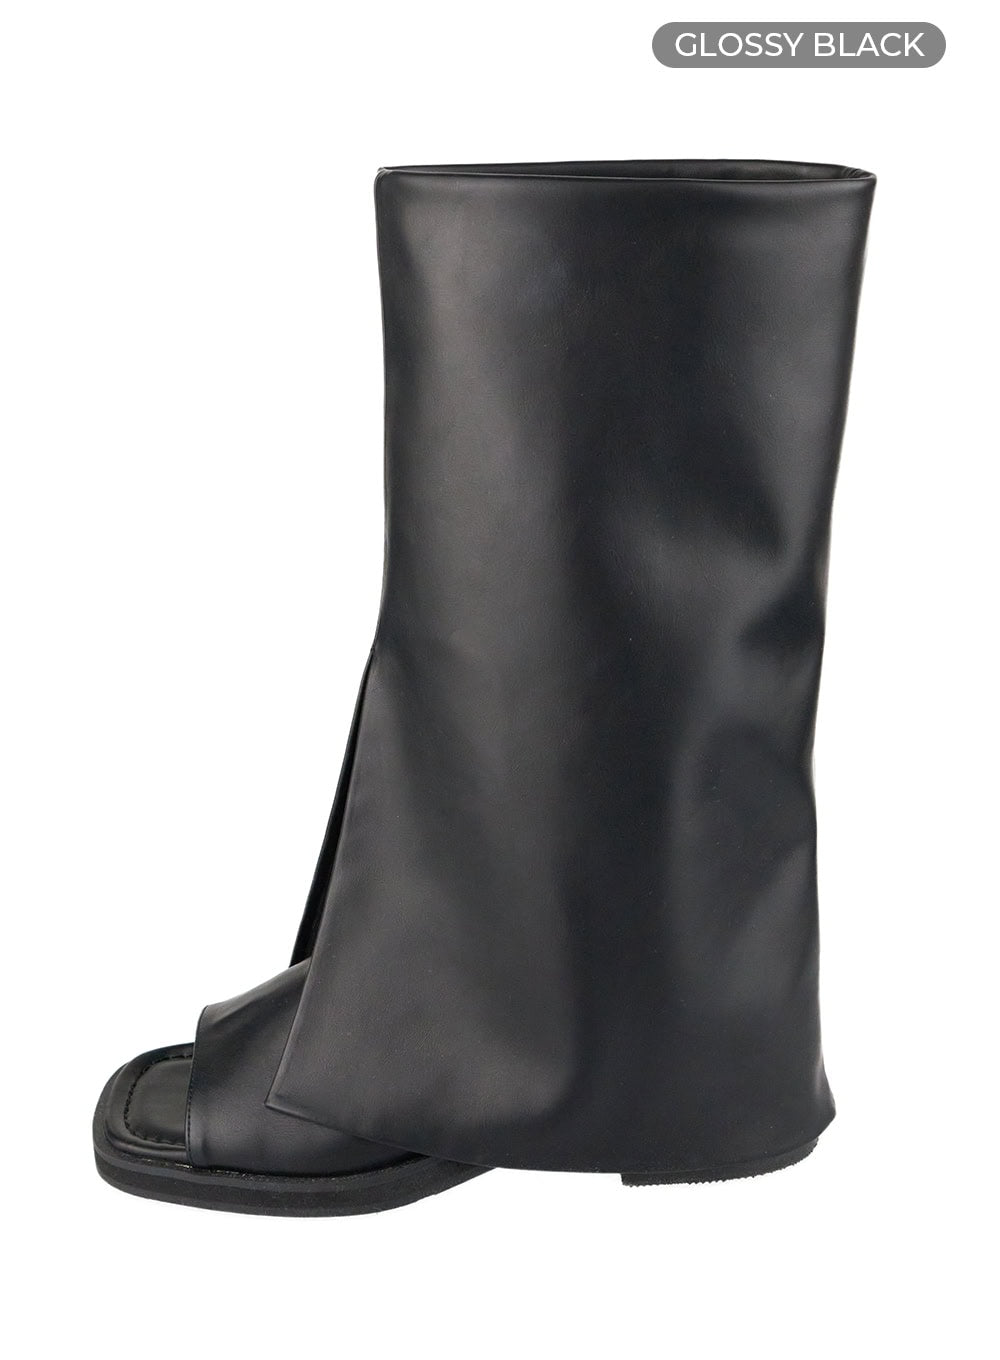 velvet-open-toe-knee-high-boots-cu425 / Glossy black